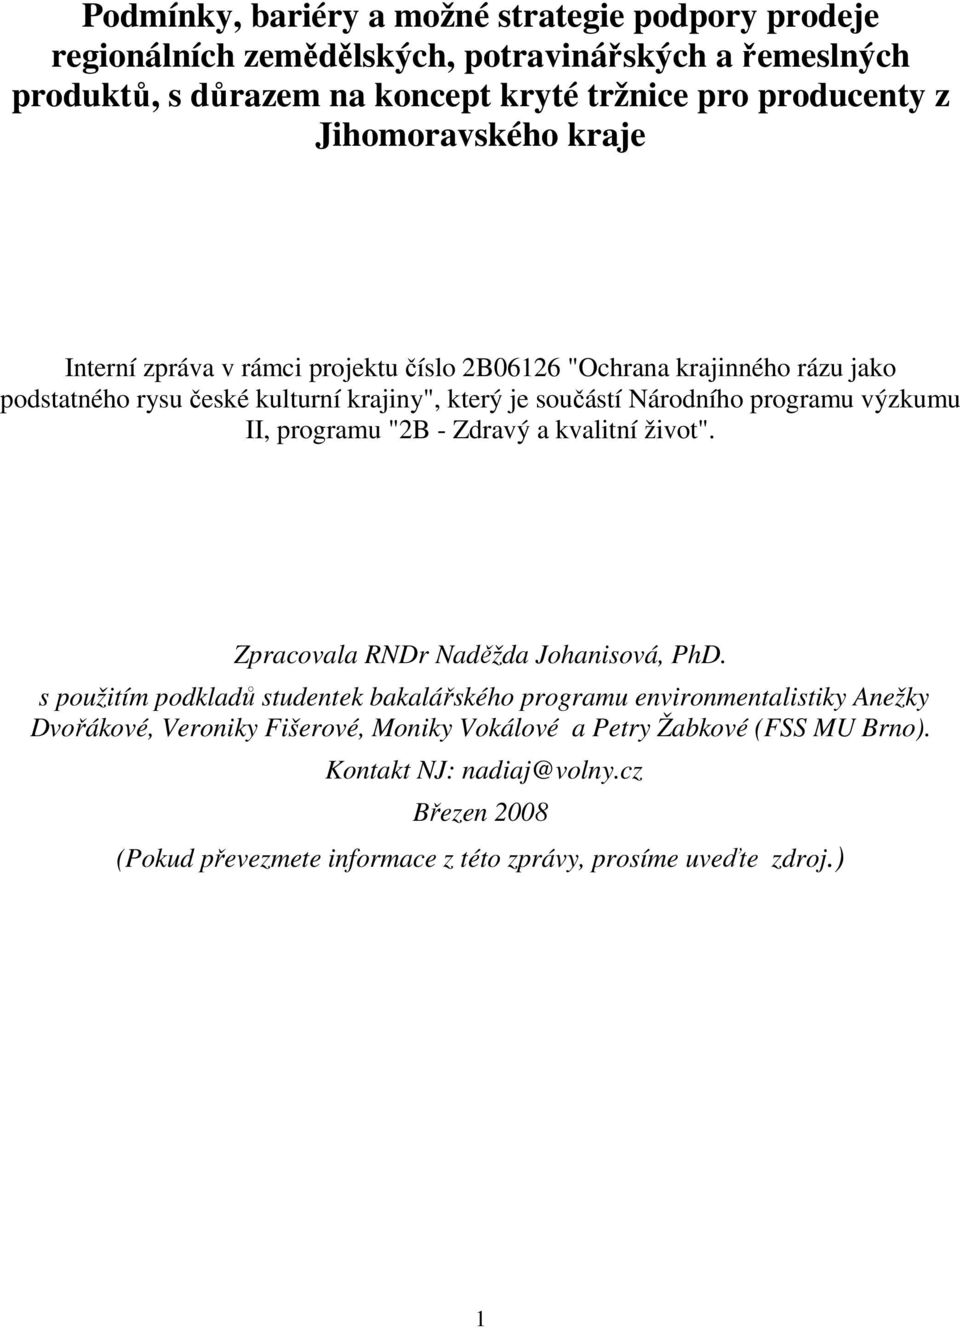 výzkumu II, programu "2B - Zdravý a kvalitní život". Zpracovala RNDr Naděžda Johanisová, PhD.